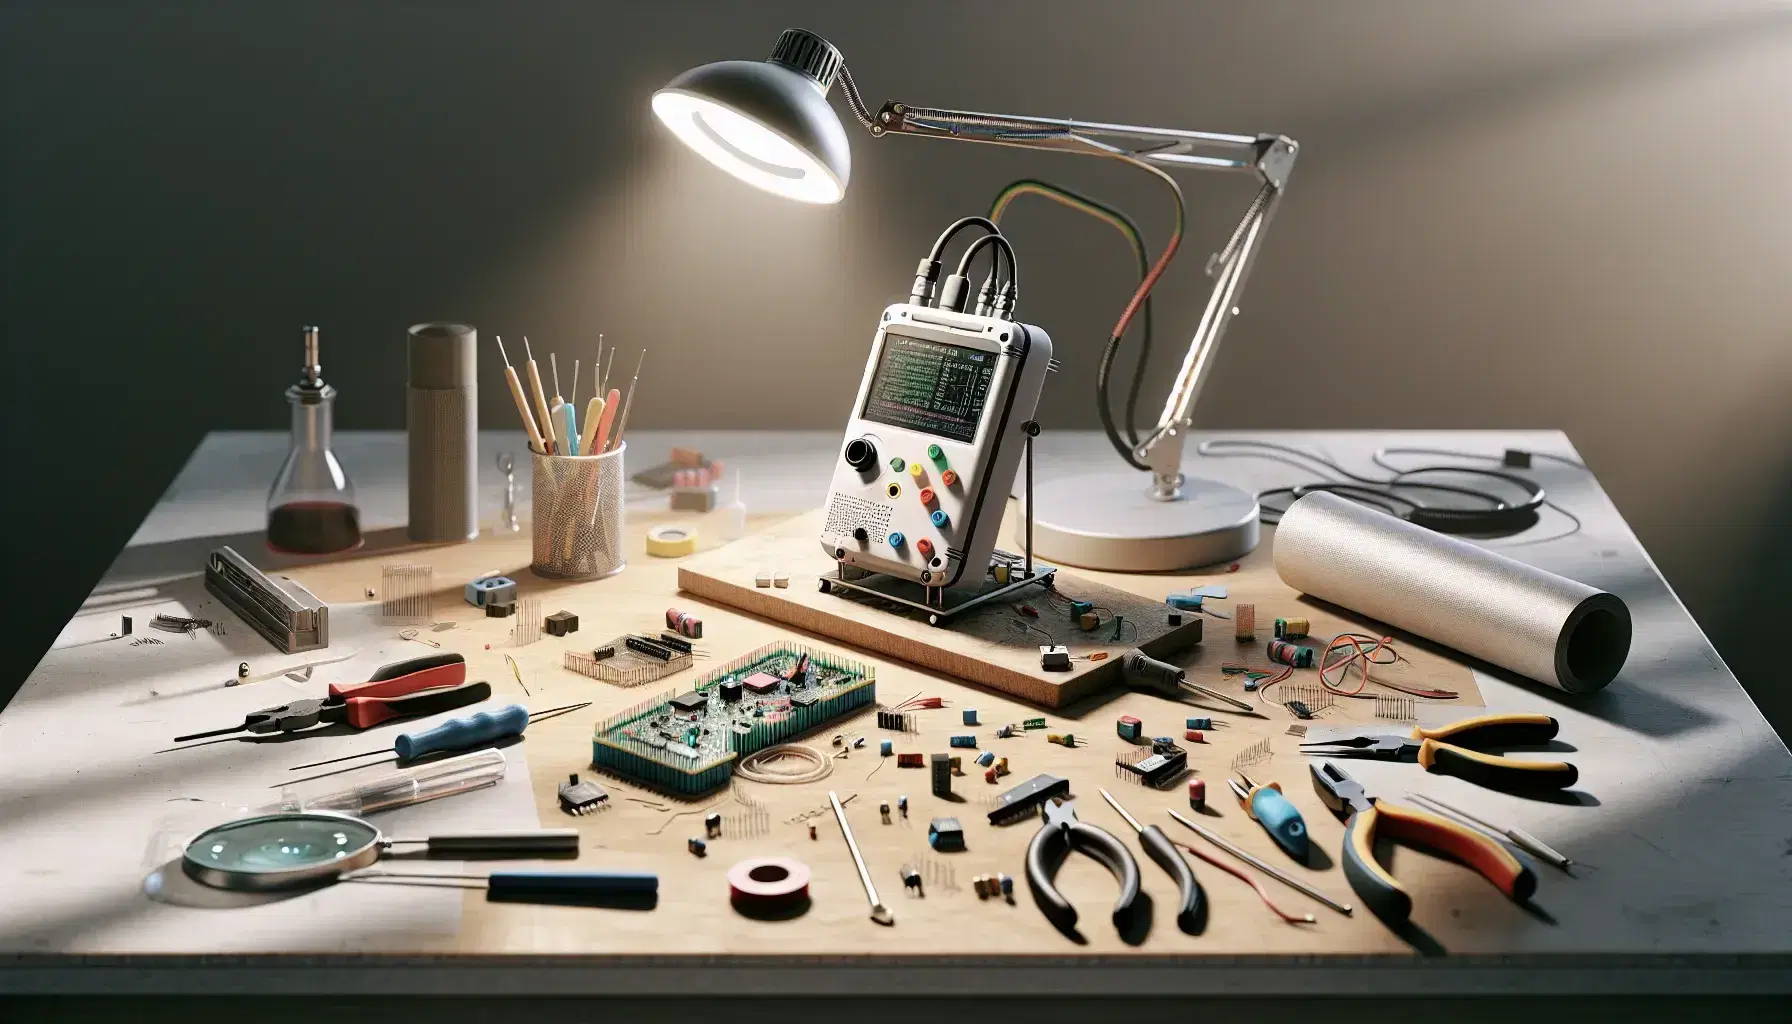 Mesa de trabajo de laboratorio con prototipo electrónico y herramientas como soldador, alicates y destornilladores, rodeado de componentes electrónicos bajo luz de lámpara articulada.